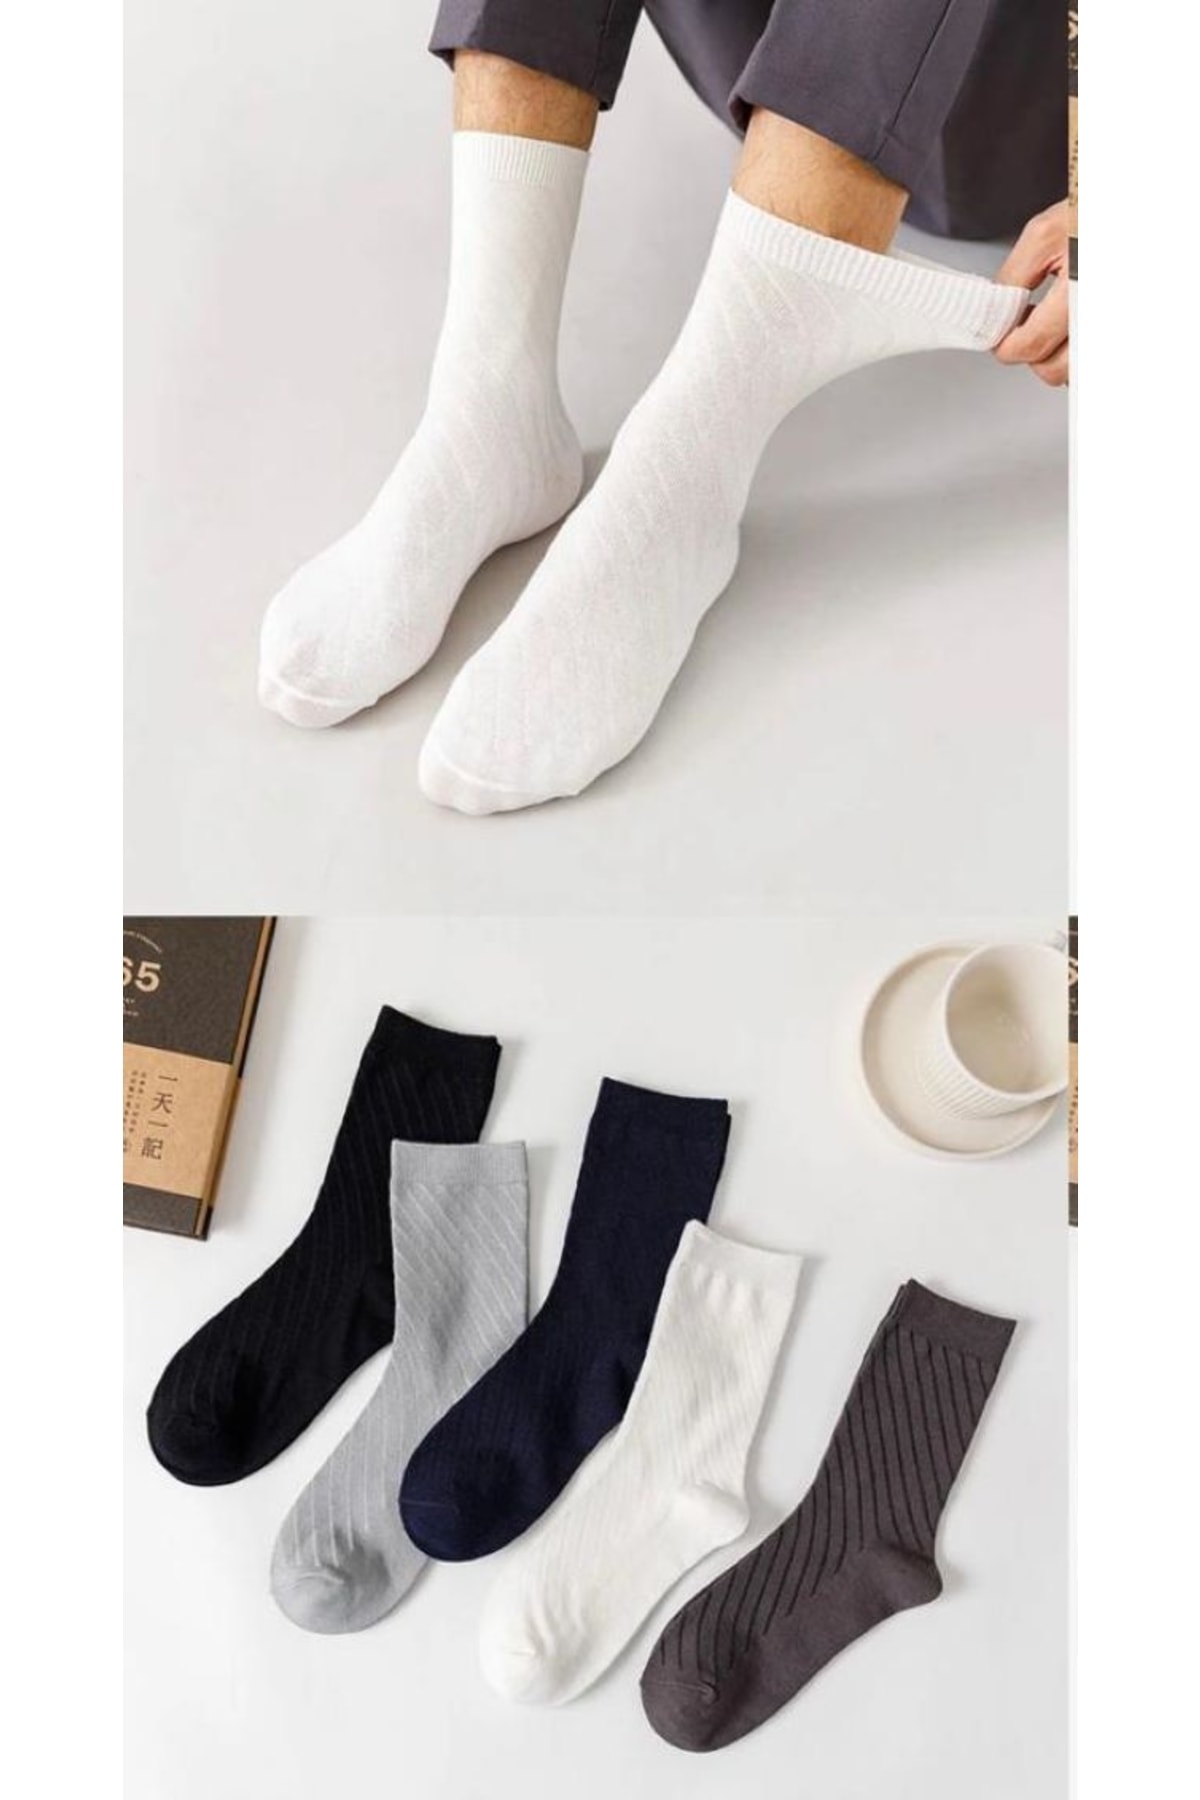 BGK Unisex Desenli 5 Çift Soket Çorap